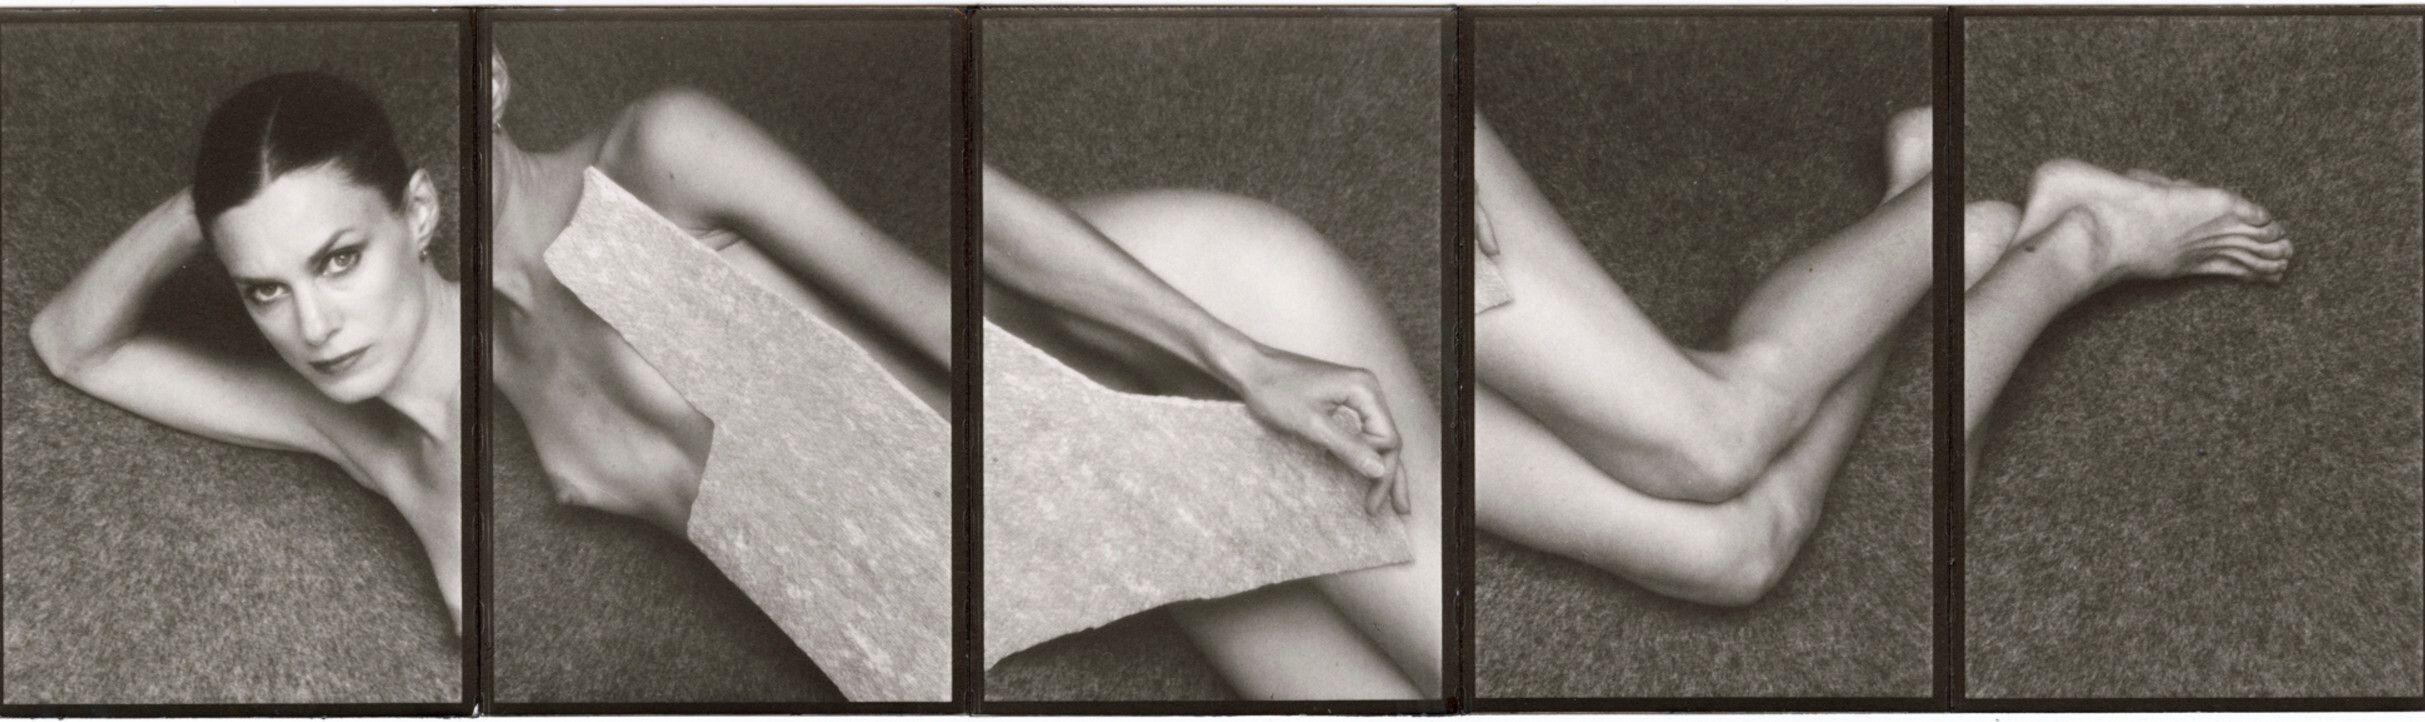 Люсинда Чайлдс, 1978 г. Фотограф Дэвид Сайднер